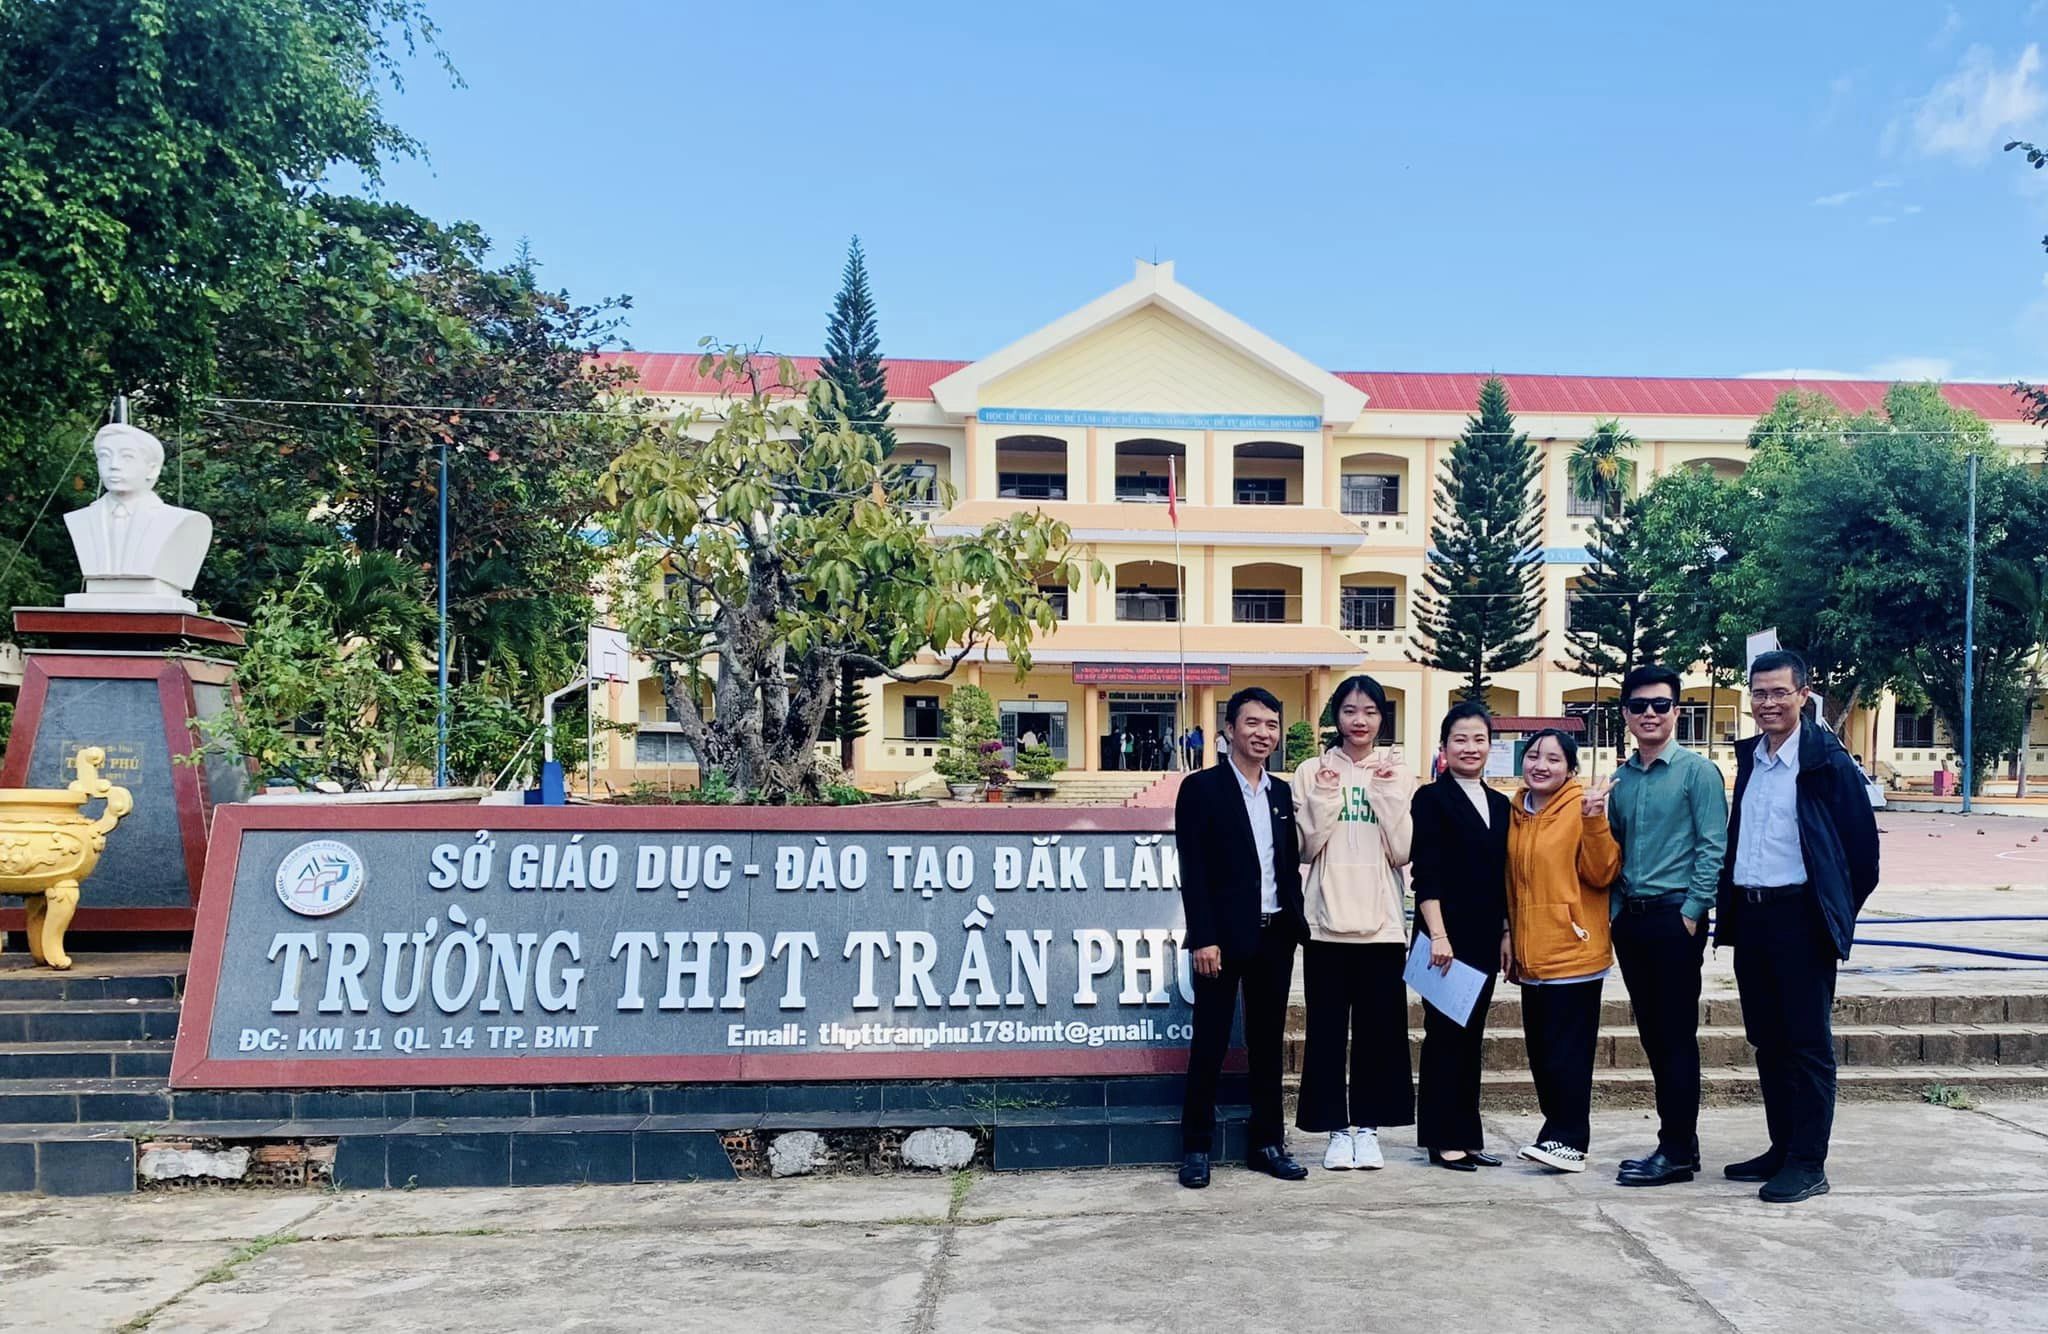 Mang lớp kỹ năng đến hơn 700 học sinh THPT Trần Phú, Đăk Lăk